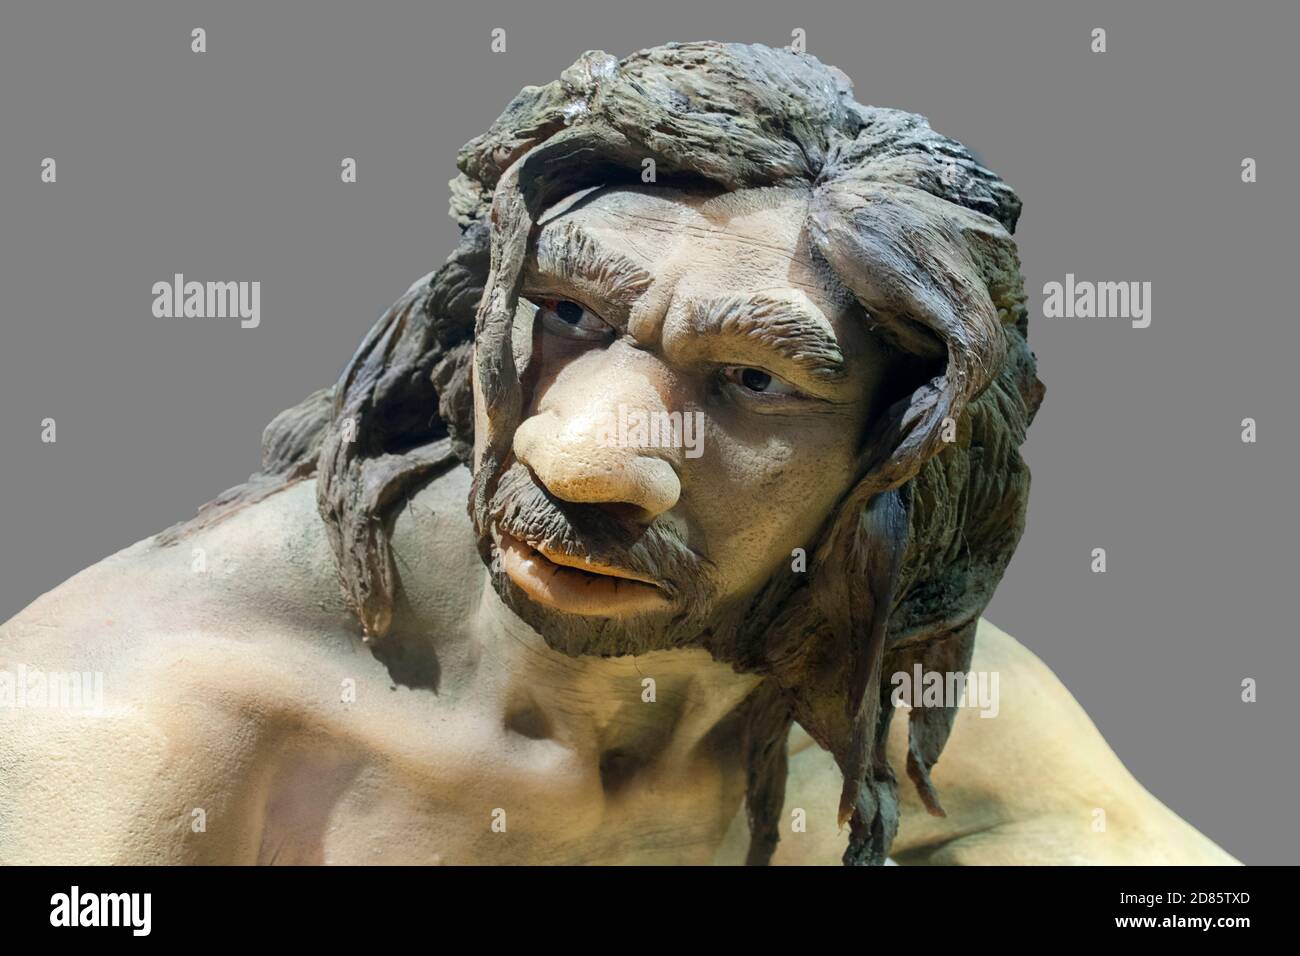 Lebensgroße Skulptur des Homo heidelbergensis. Regionales Archäologisches Museum von Madrid. Nahaufnahme des Gesichts. Alcala de Henares, Spanien Stockfoto